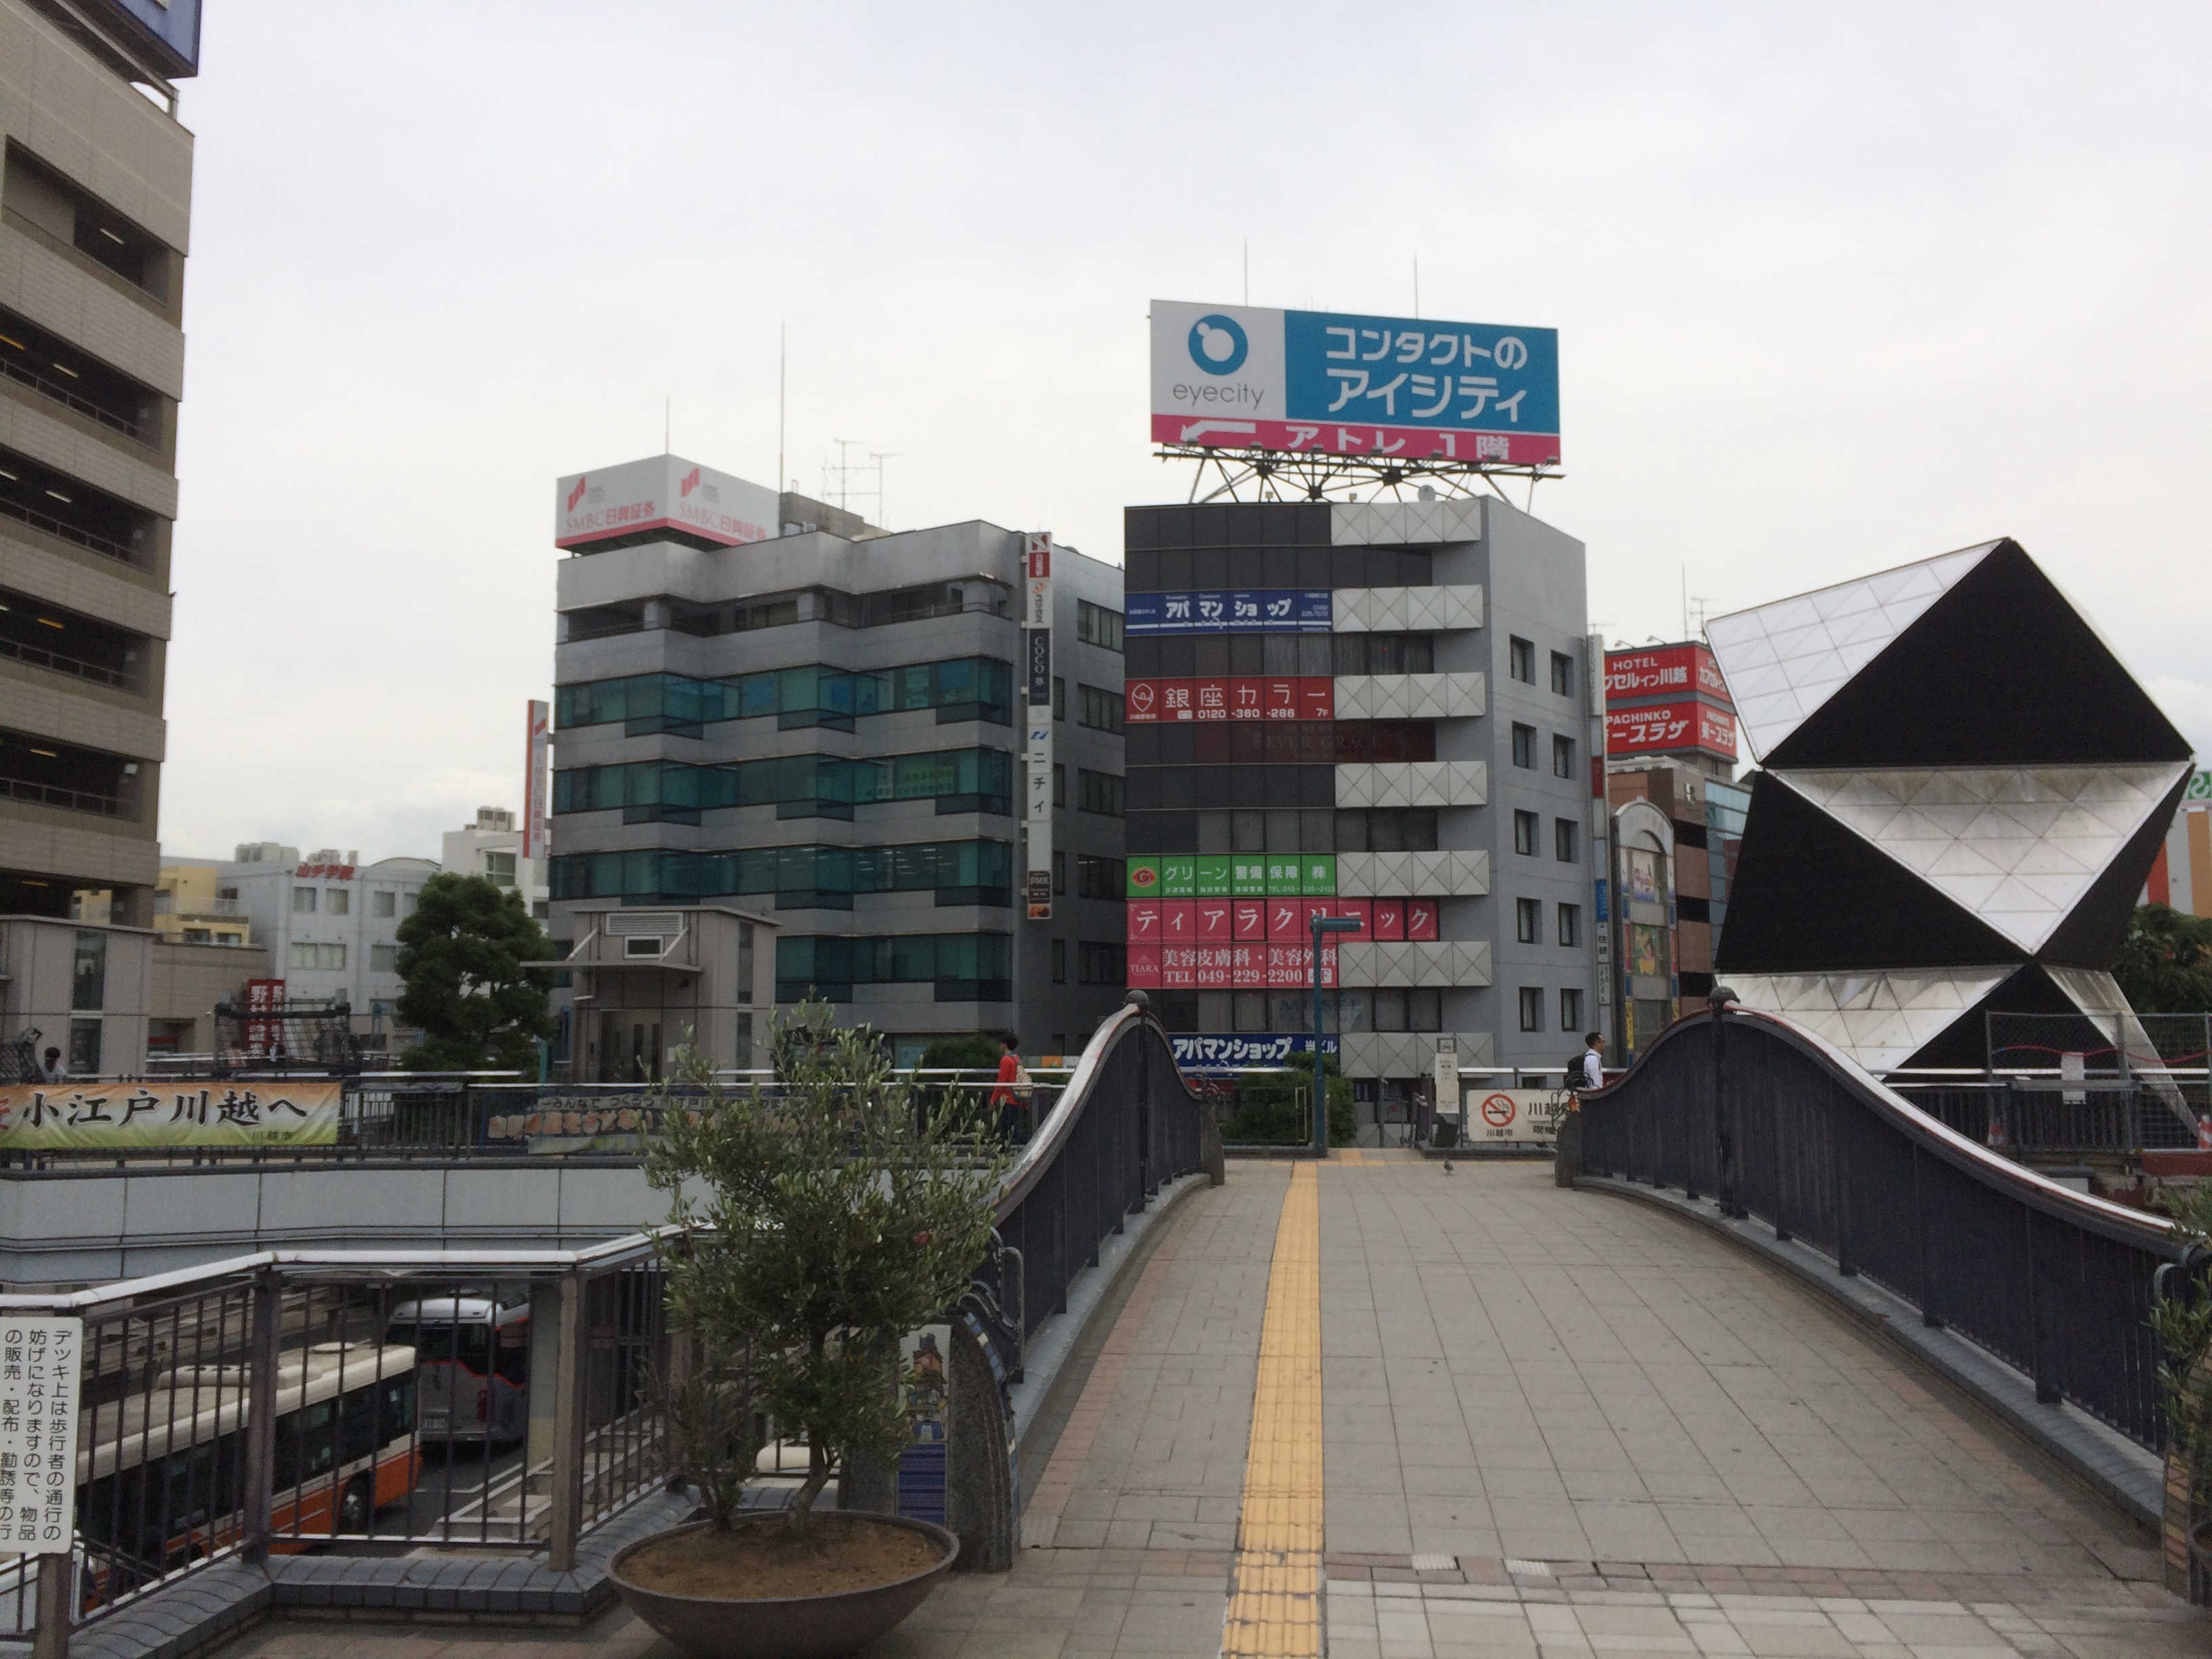 川越駅(かわごええき)東口(ひがしぐち)ロータリー